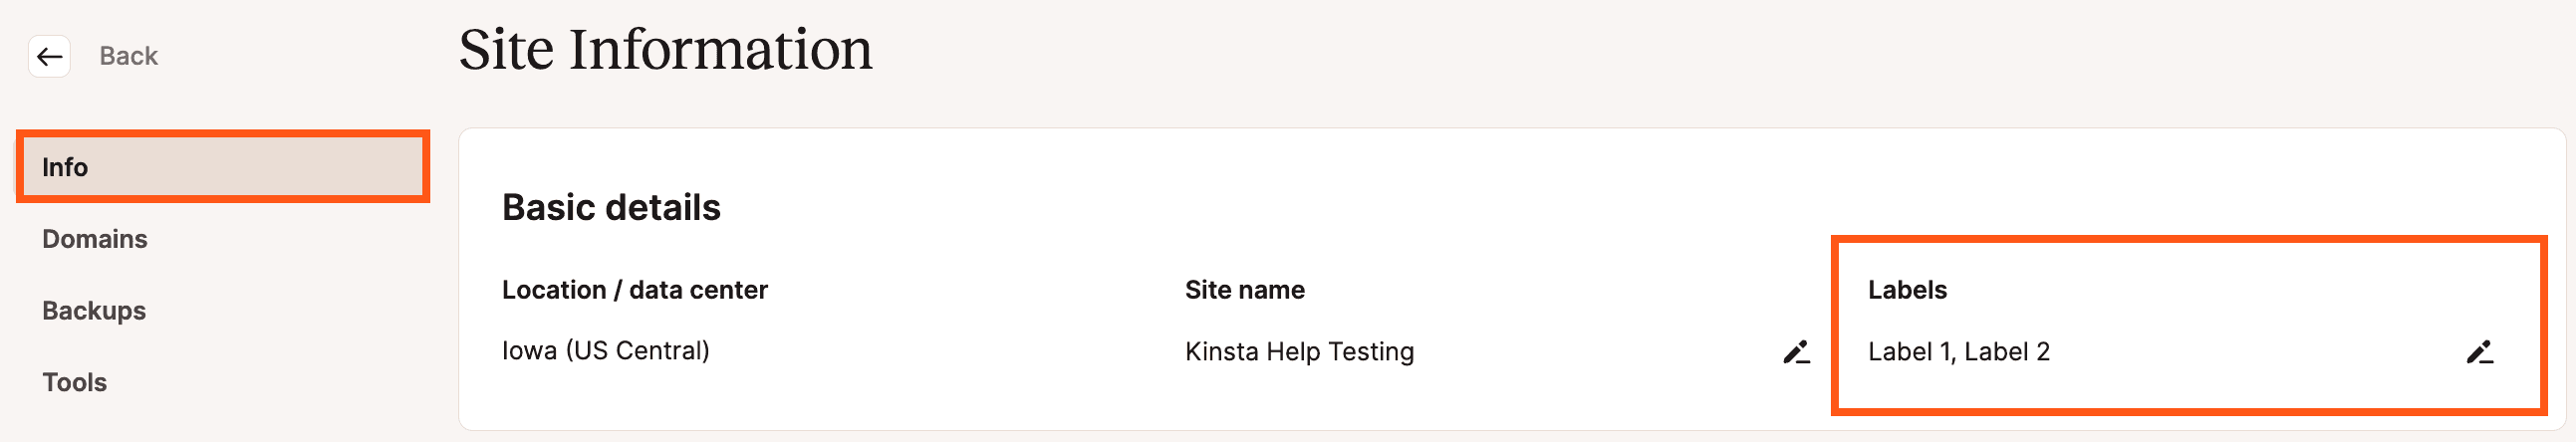 Le etichette del sito nella pagina Informazioni sul sito di MyKinsta.